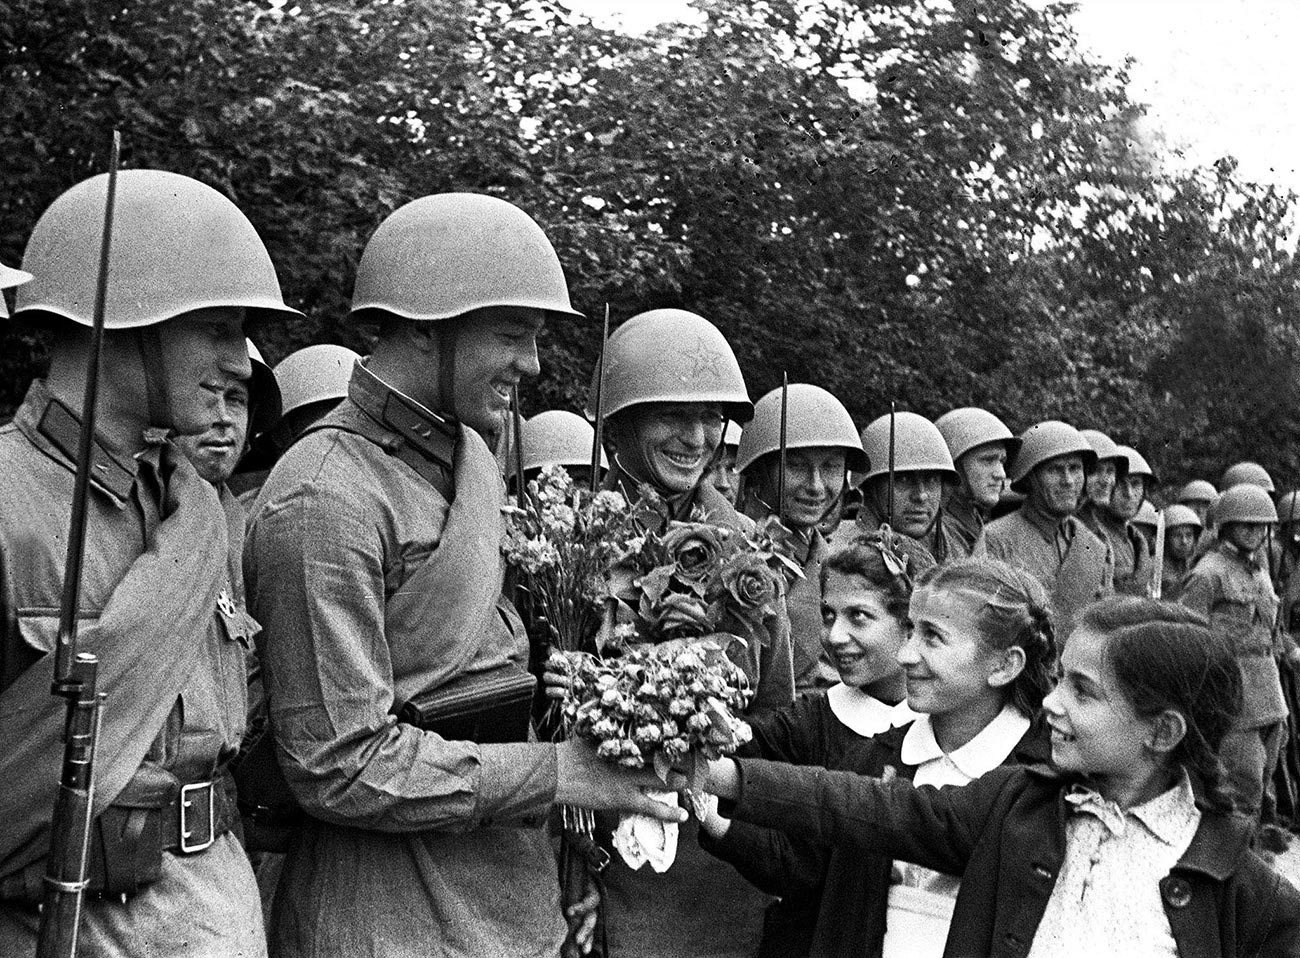 Otroci pozdravljajo vojake Rdeče armade med parado ob priključitvi Besarabije in Severne Bukovine Sovjetski zvezi, Kišinjev, 4. julij 1940.

